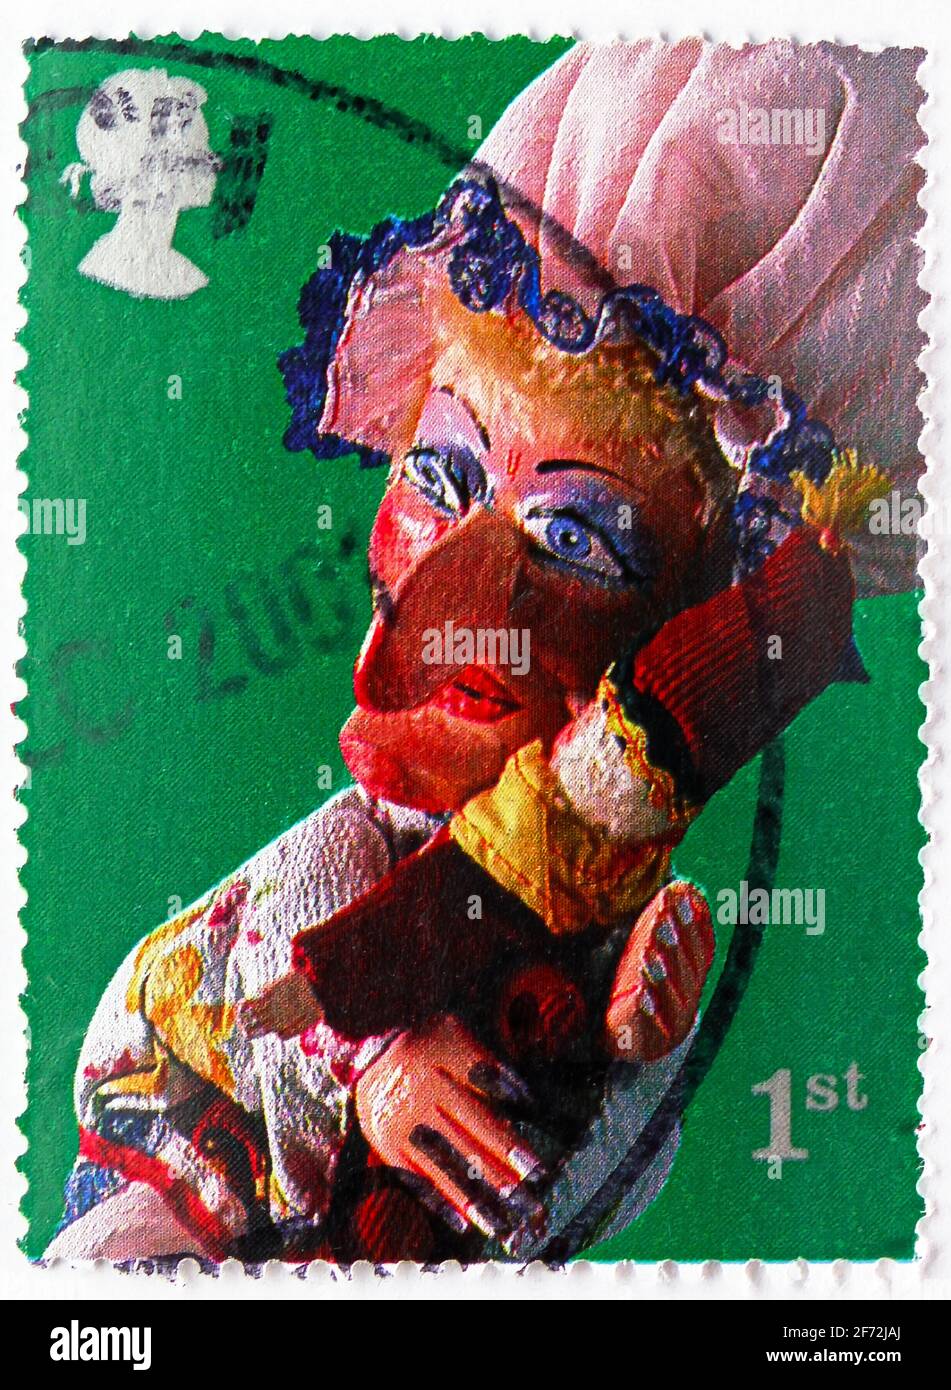 MOSCOU, RUSSIE - 22 DÉCEMBRE 2020: Timbre-poste imprimé au Royaume-Uni montre Judy, Punch et Judy Show Puppets série, vers 2001 Banque D'Images